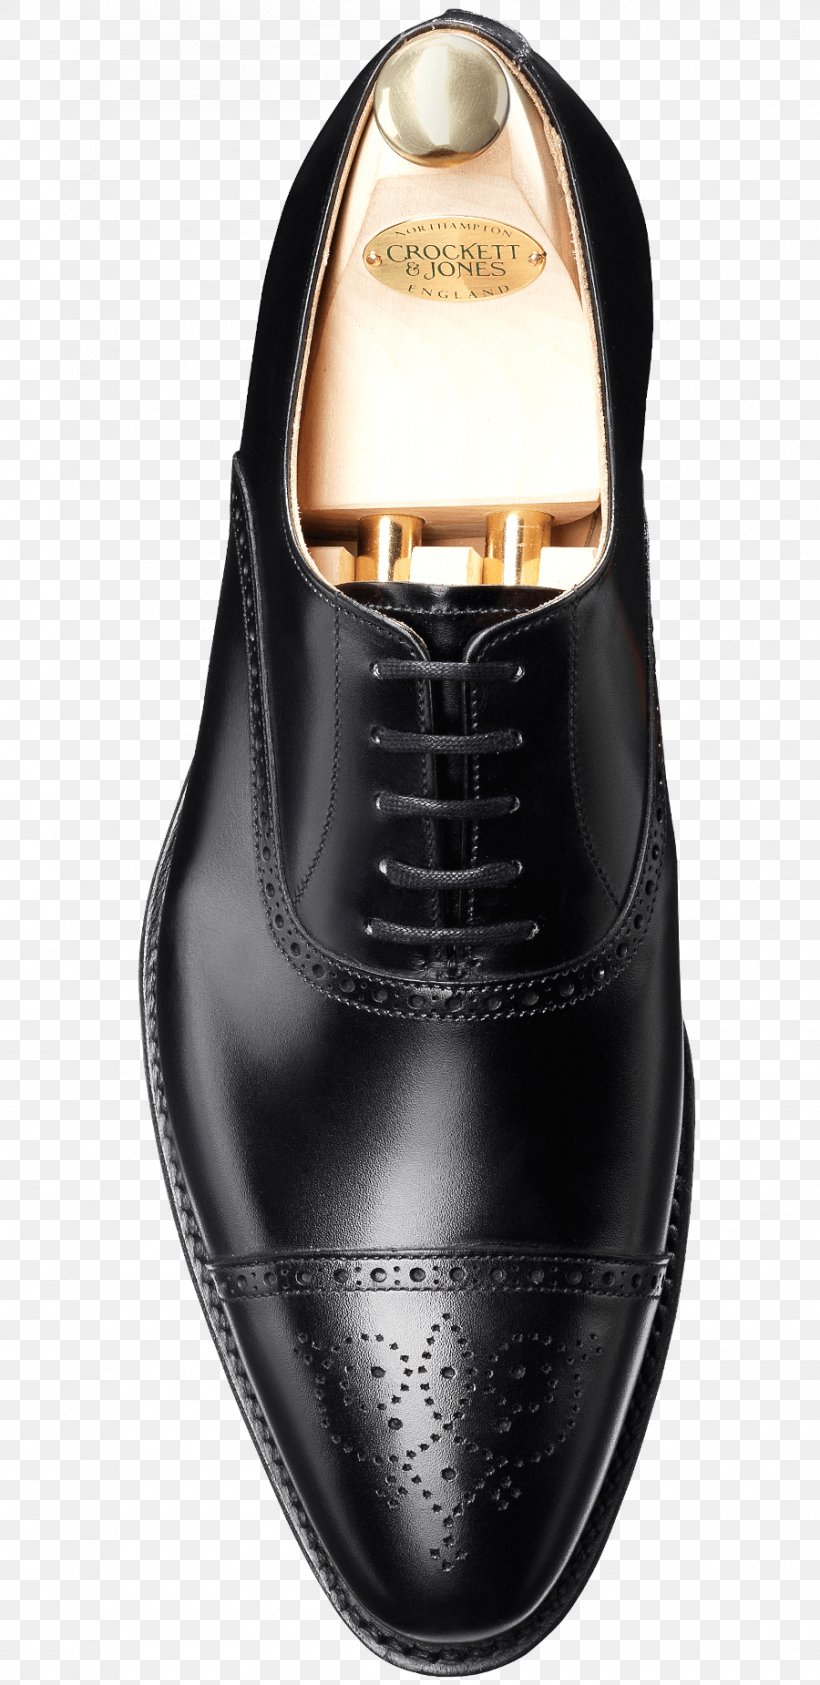 Oxford Shoe Leather Calfskin Crockett & Jones, PNG, 900x1850px, Oxford Shoe, Black, Calf, Calfskin, Clothing Accessories Download Free